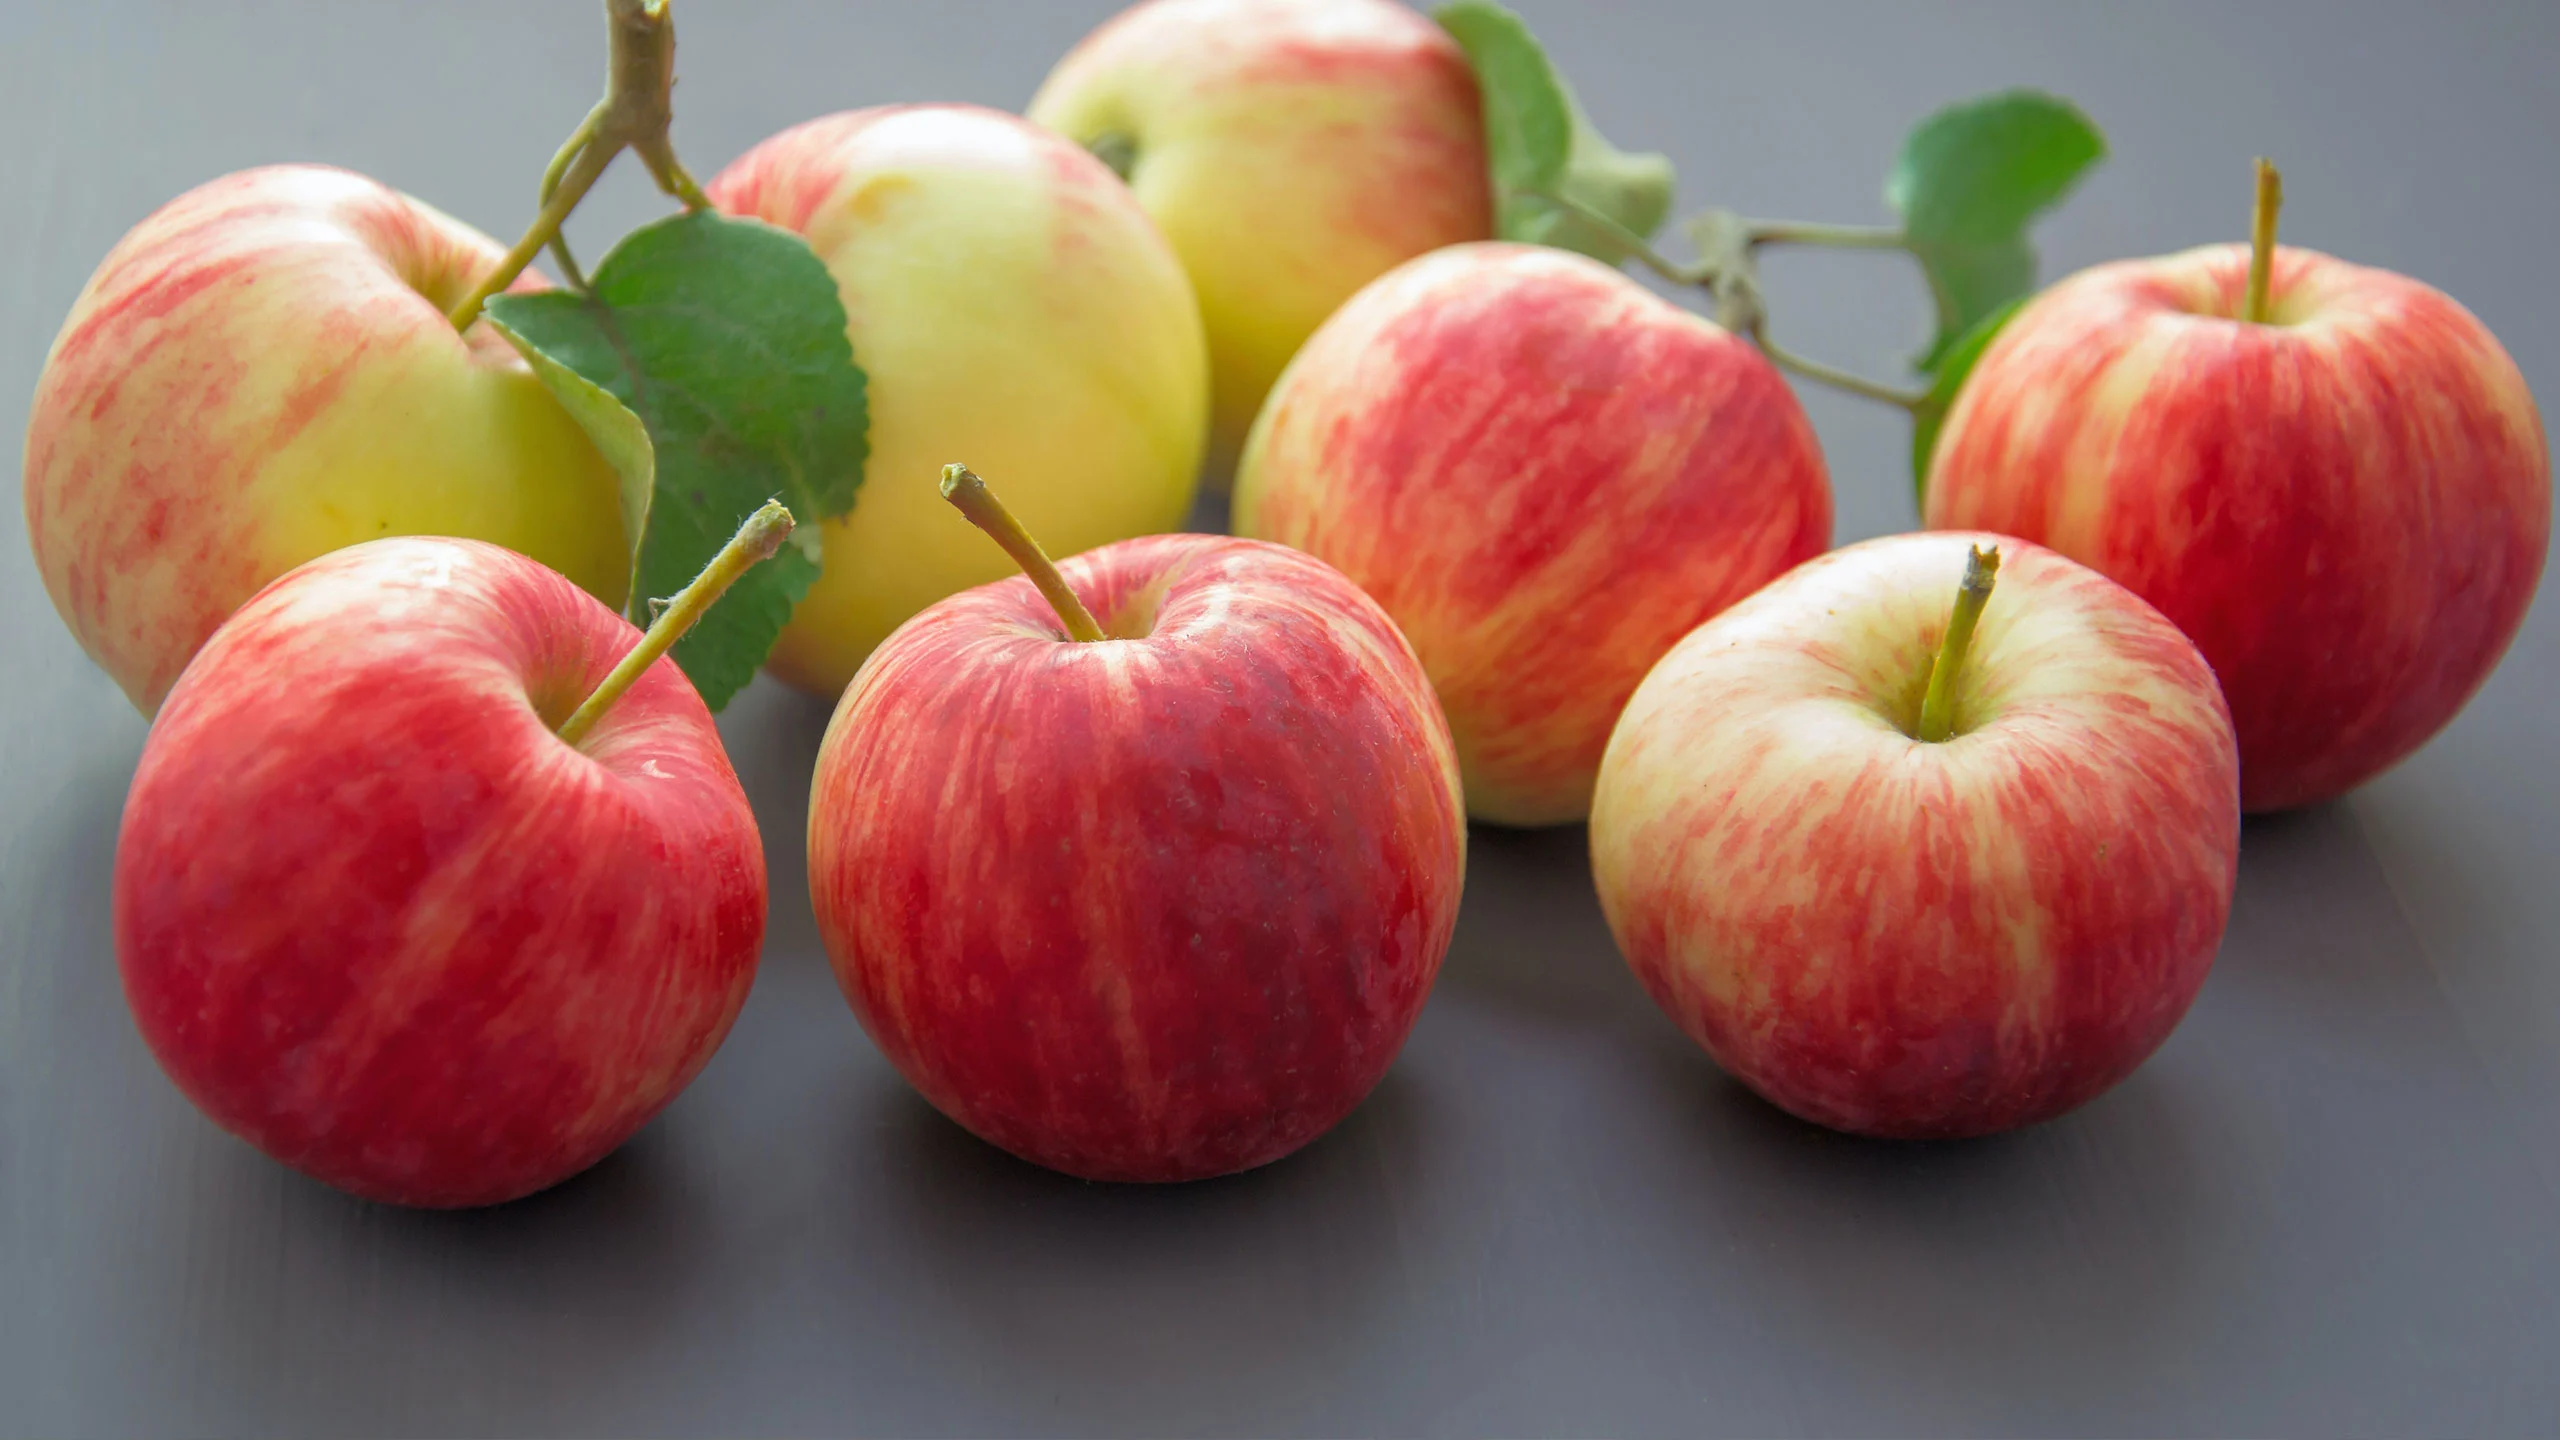 La importancia de la manzana panochera en los chiles en nogada